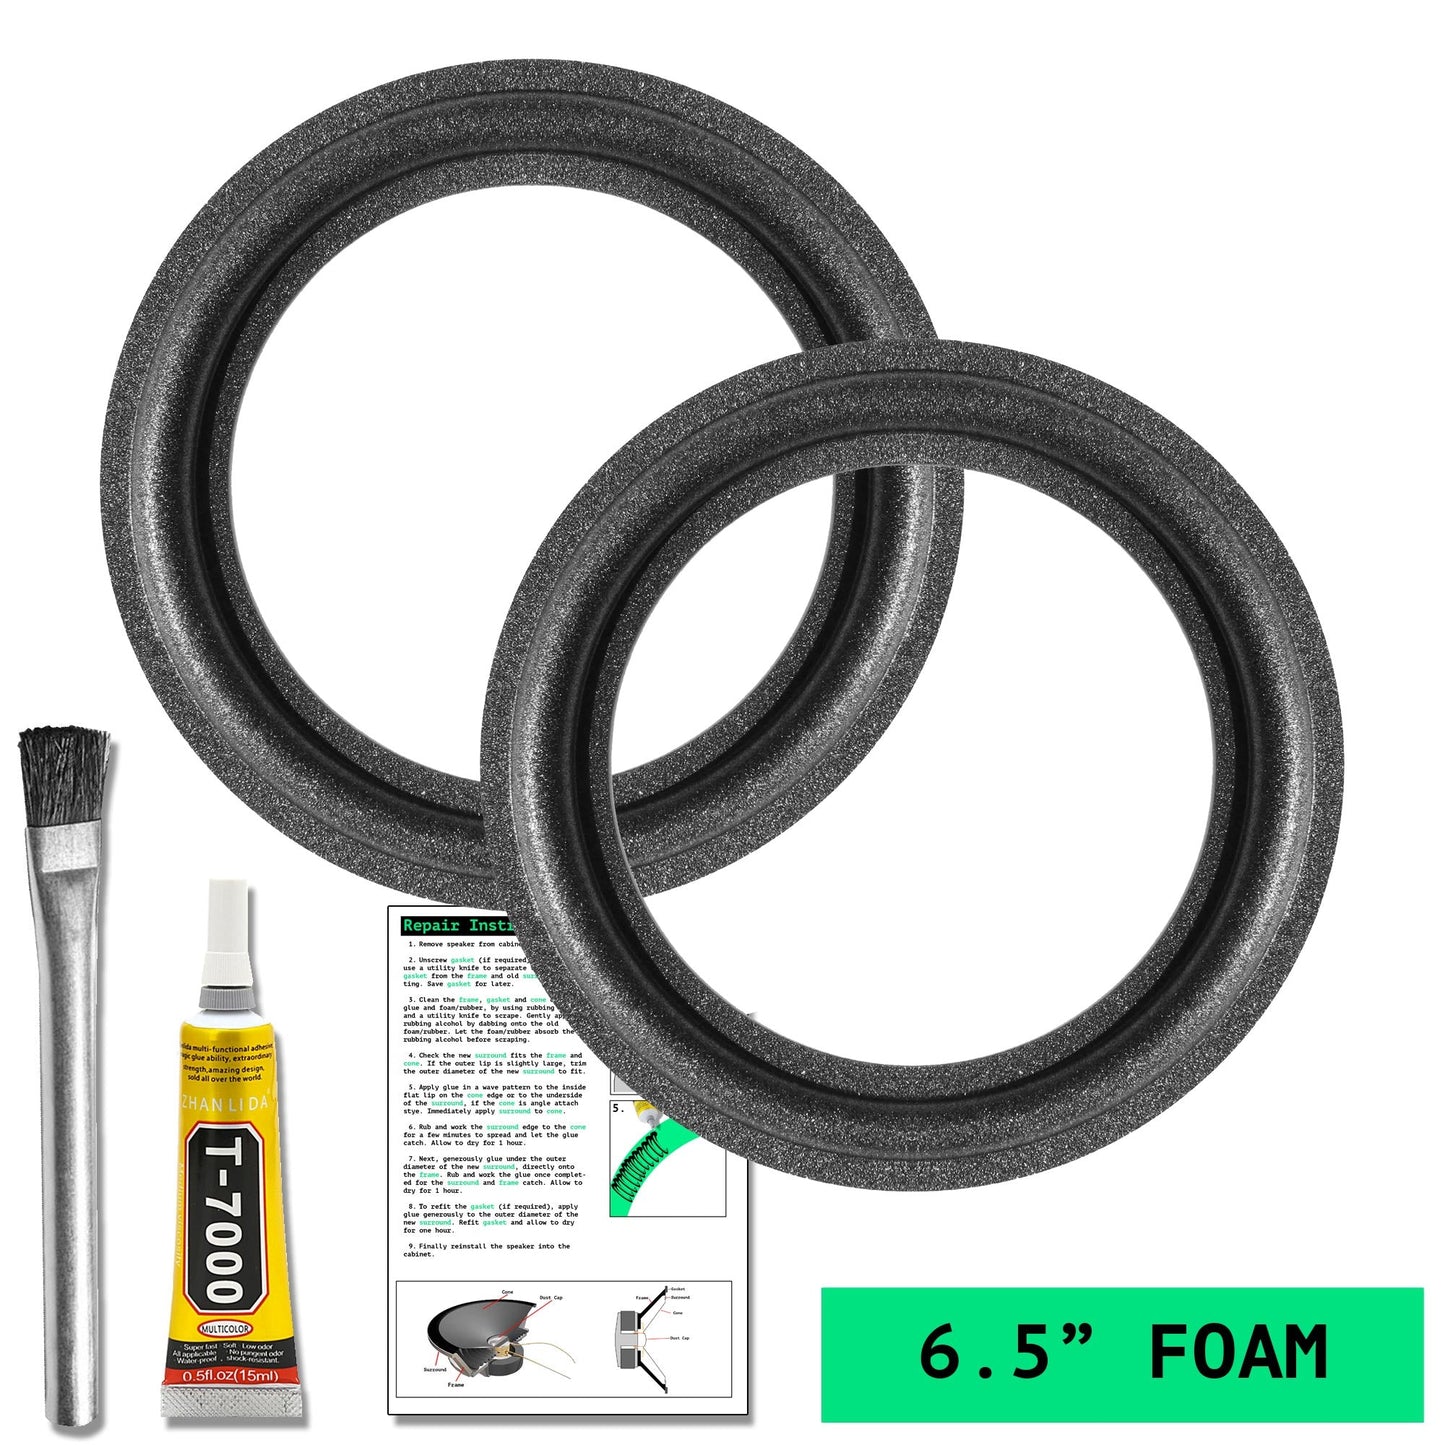 Energy ESM4 6.5" Foam Repair Kit